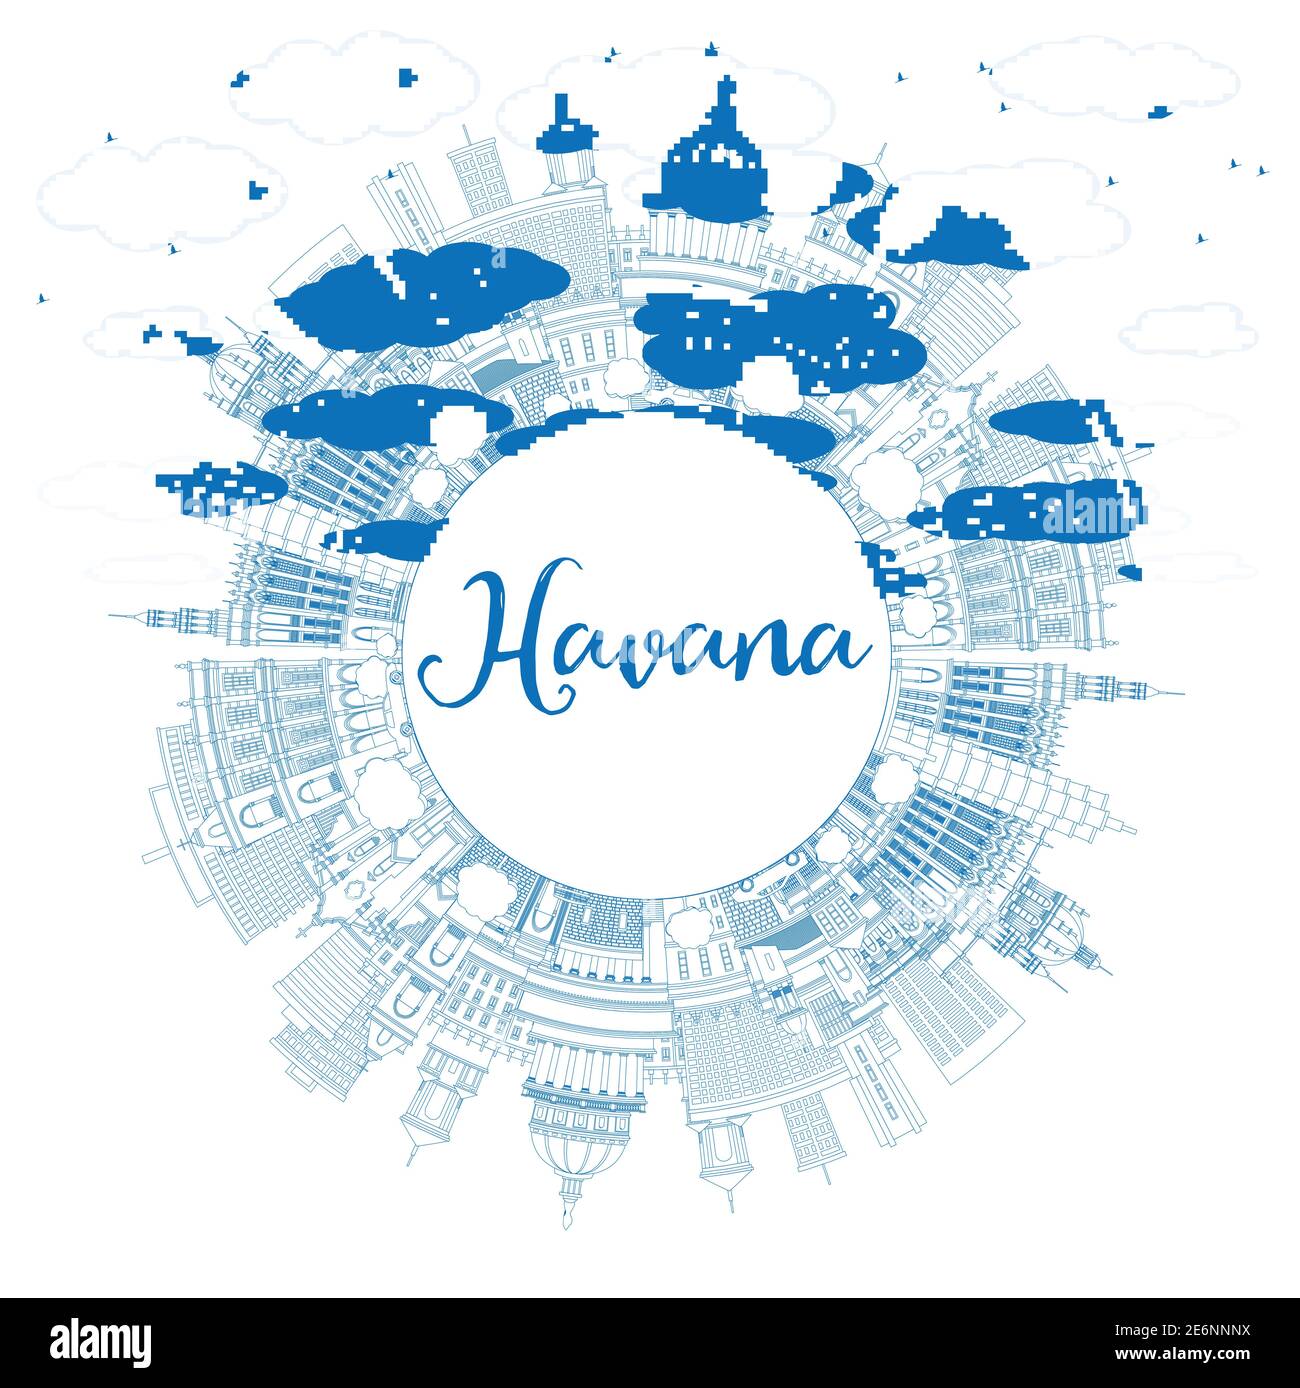 Profilo l'Avana Cuba City Skyline con edifici blu e Copy Space. Illustrazione vettoriale. Concetto turistico con architettura storica e moderna. Illustrazione Vettoriale